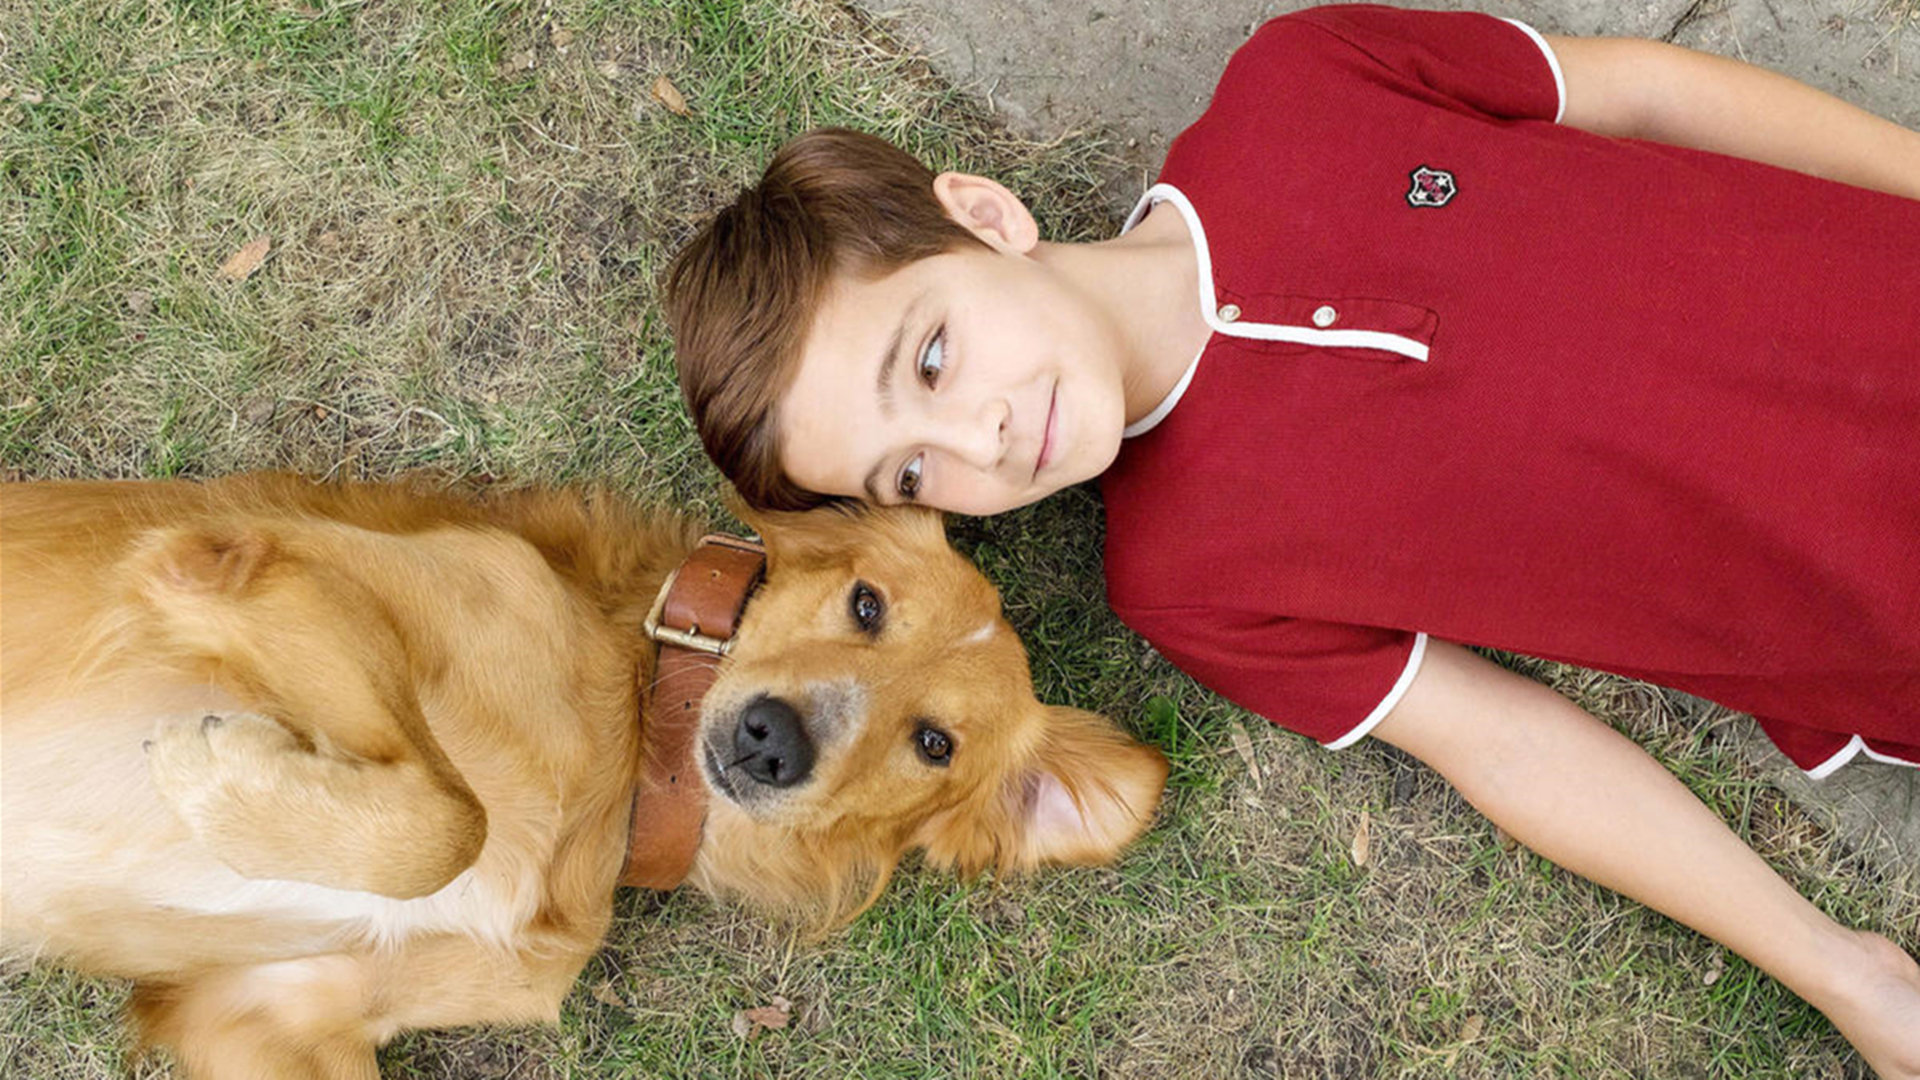 Cute girl and dog - Papel de Parede Internacional do Dia das Crianças ...